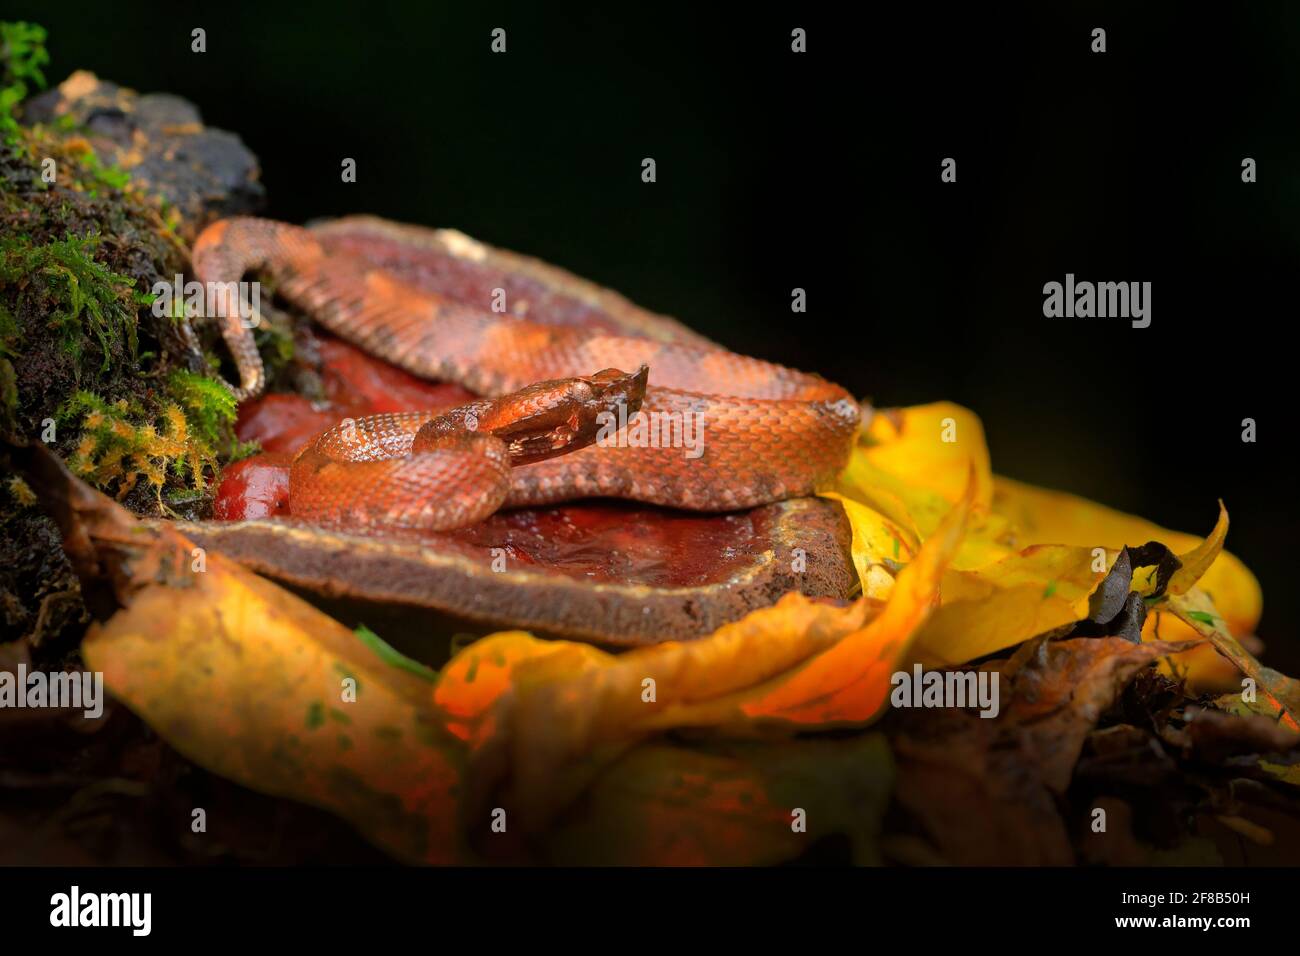 Porthidium nasutum, Hognosed Pitviper, brown danger poison snake in the forest vegetation. Forest reptile in habitat, on the ground in leaves, Costa R Stock Photo